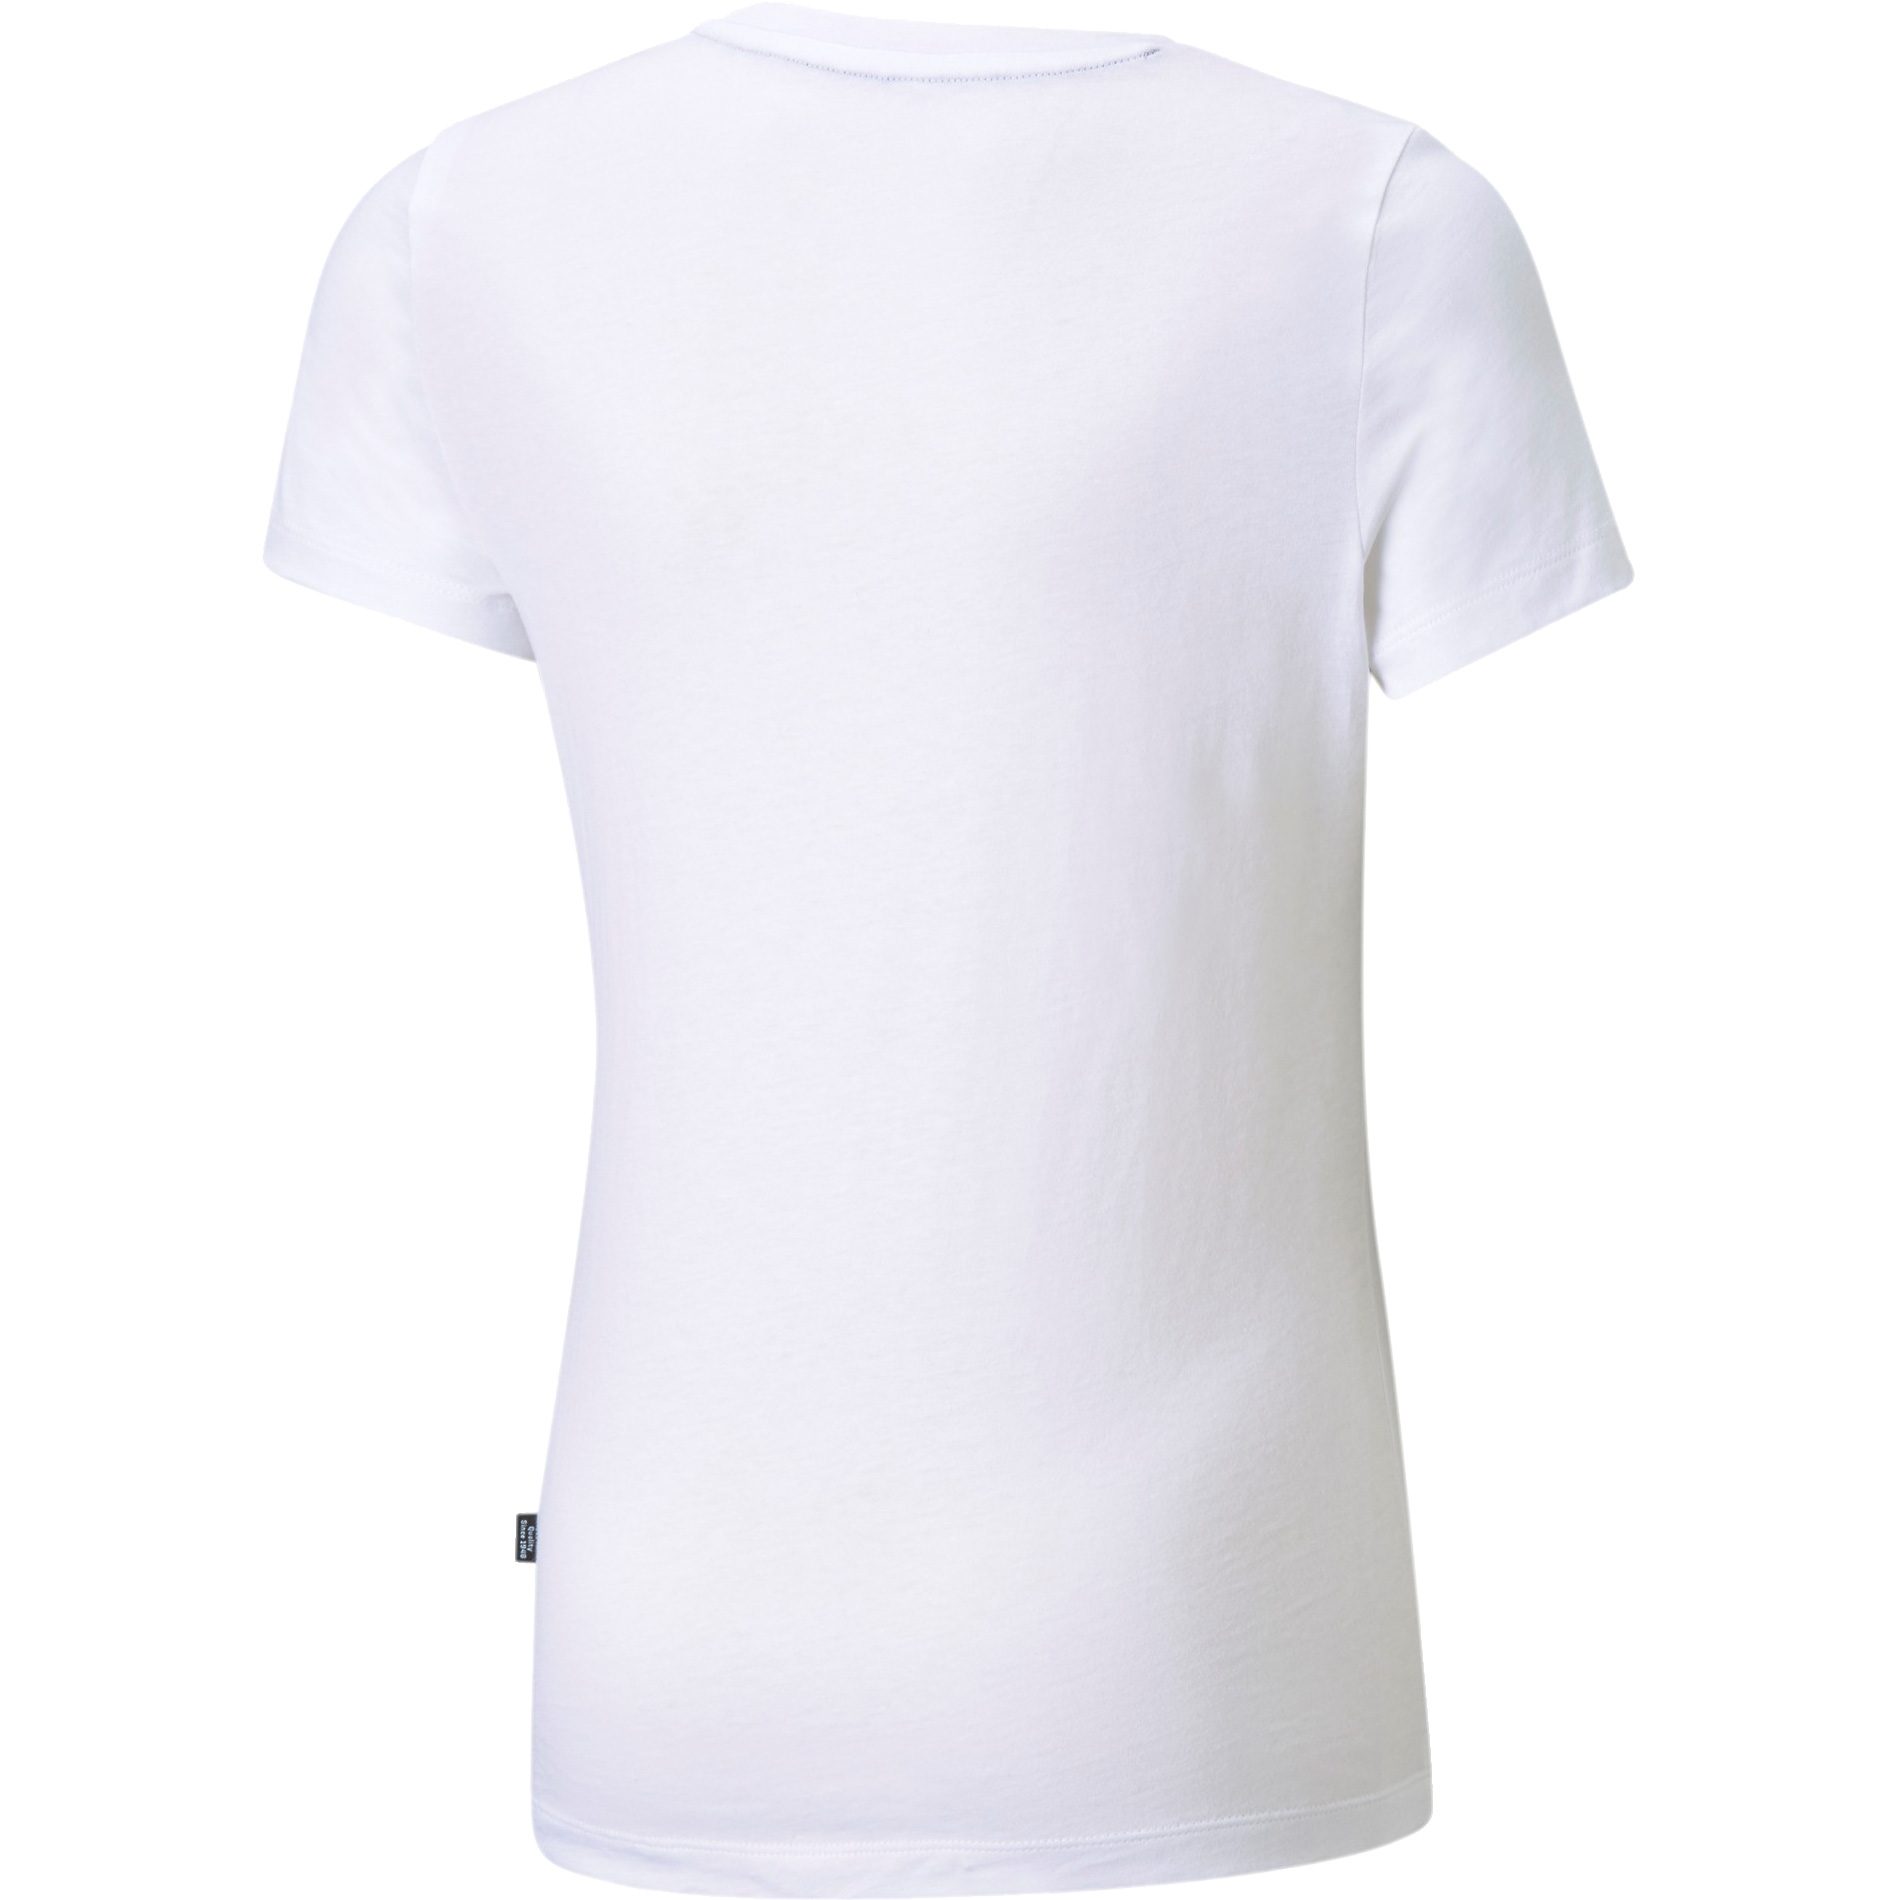 Puma - Essentials Logo T-Shirt Mädchen puma white kaufen im Sport Bittl Shop